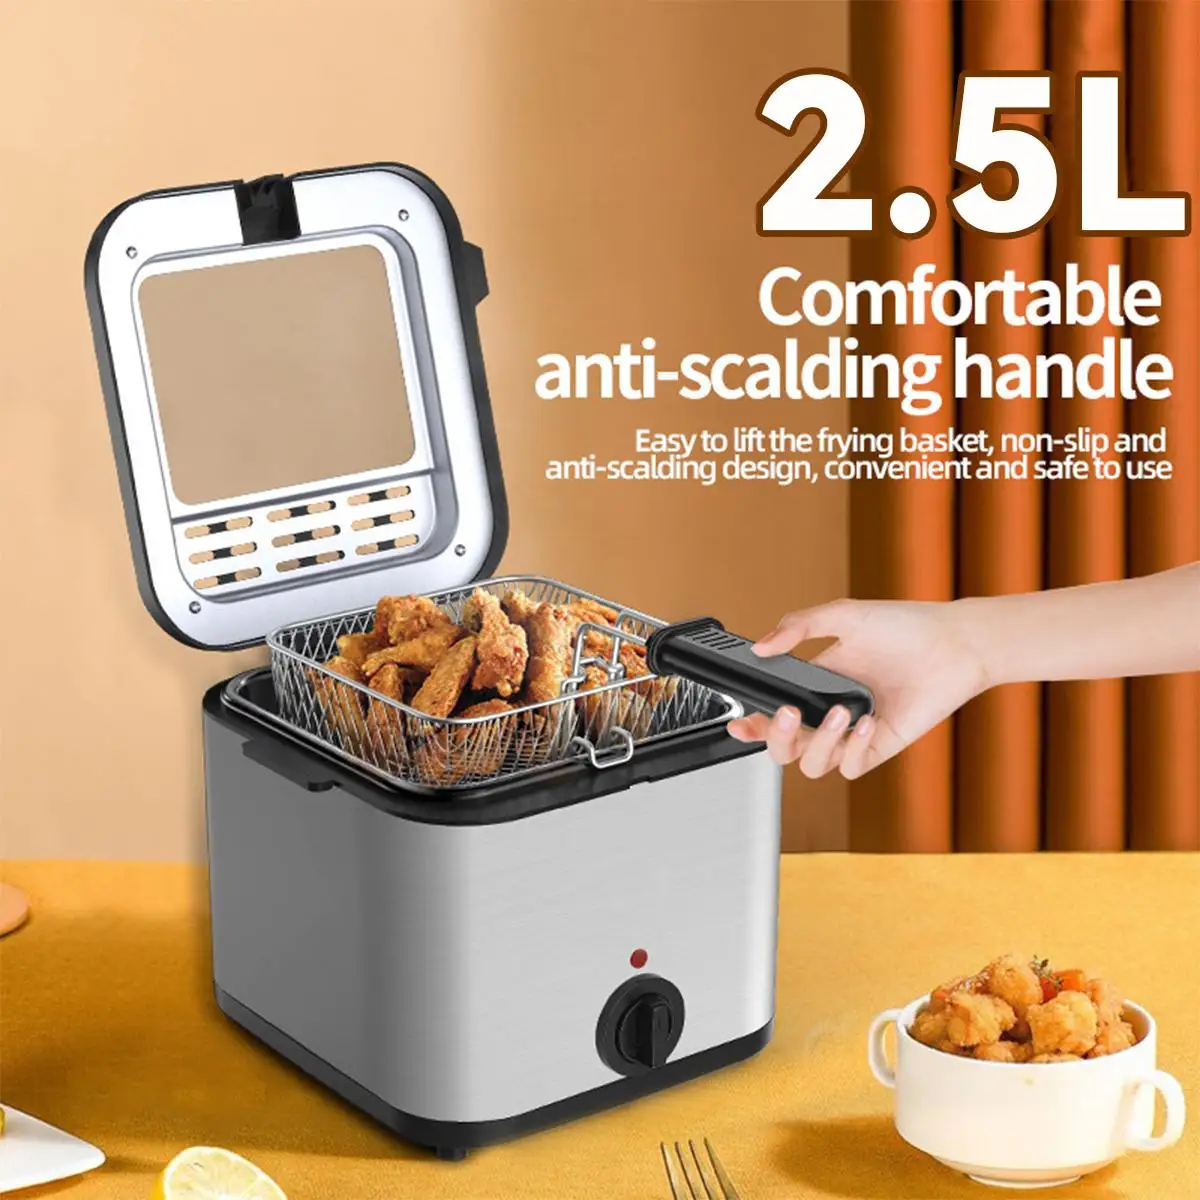 

Электрическая Фритюрница 2,5 л, фритюрница для картофеля фри с корзиной, гриль для жарки курицы, регулируемый термостат